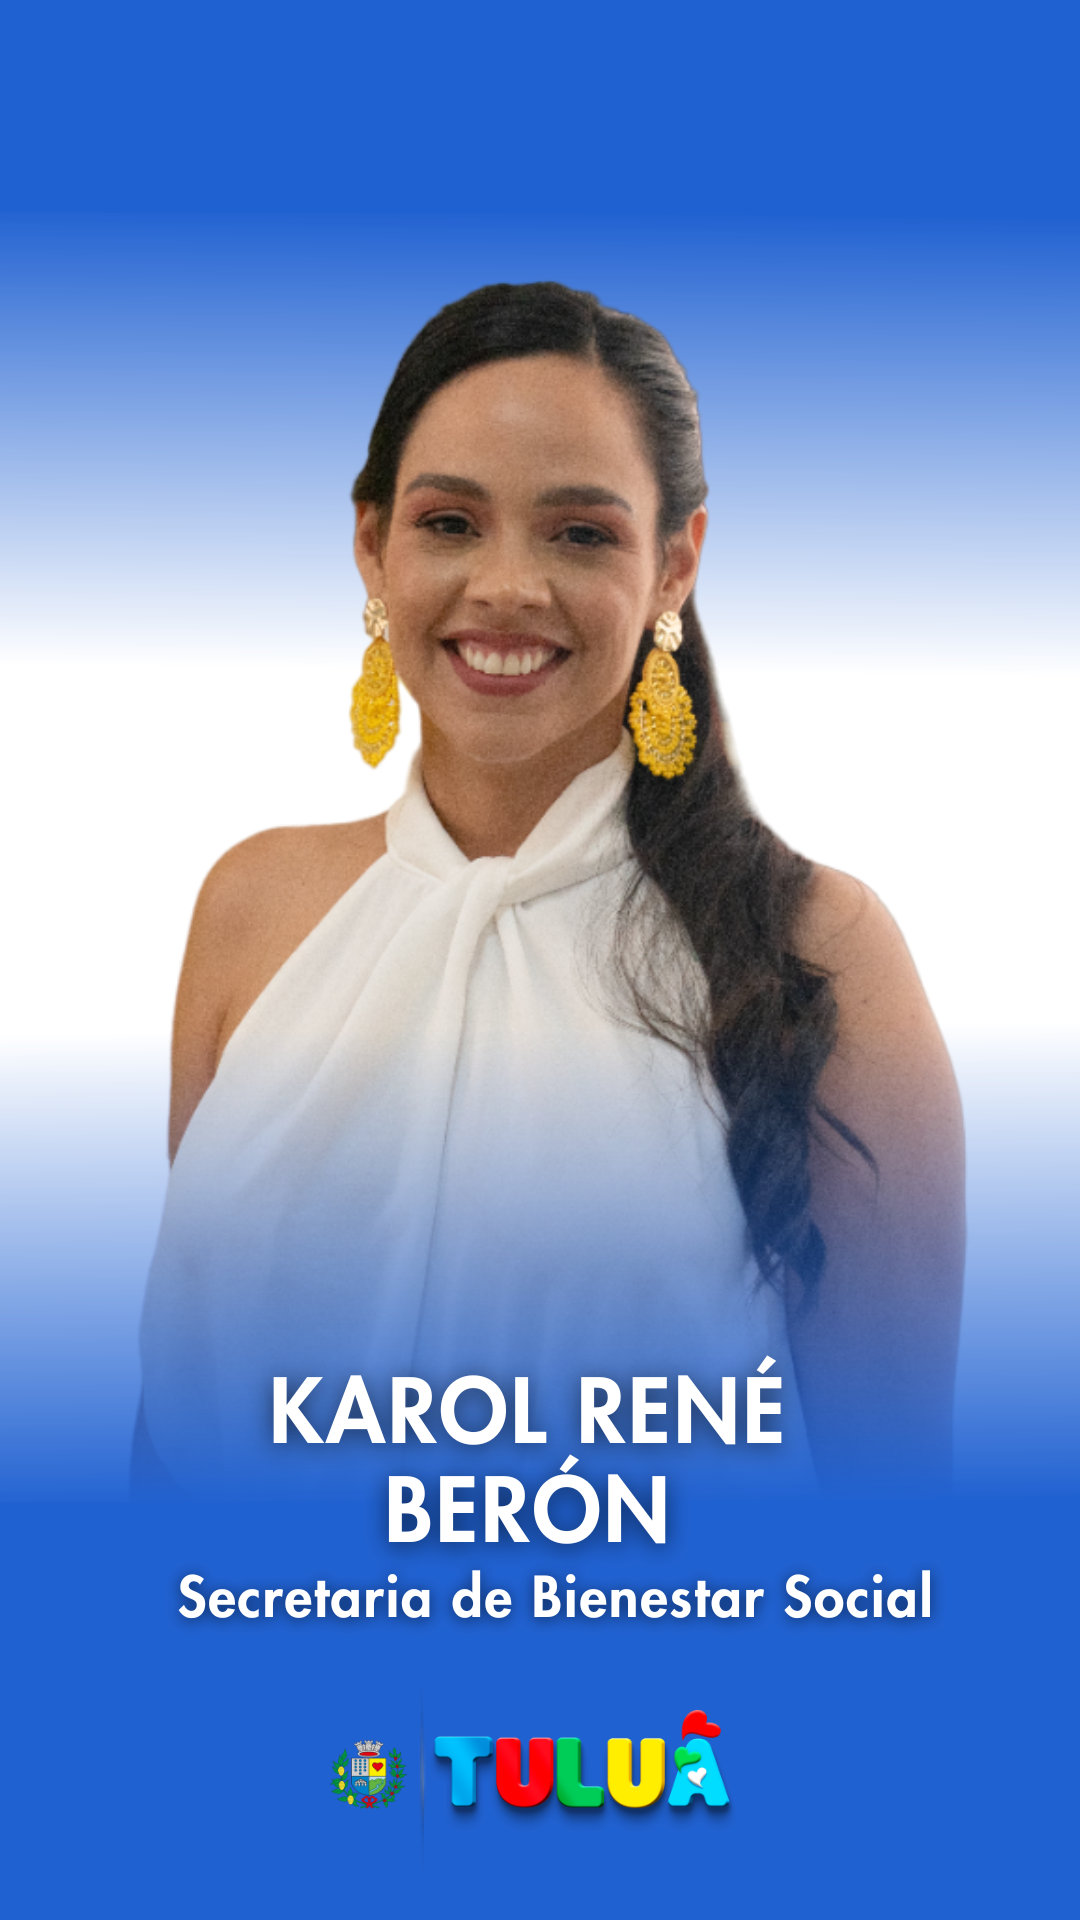 Karol Rene Beron Ortiz